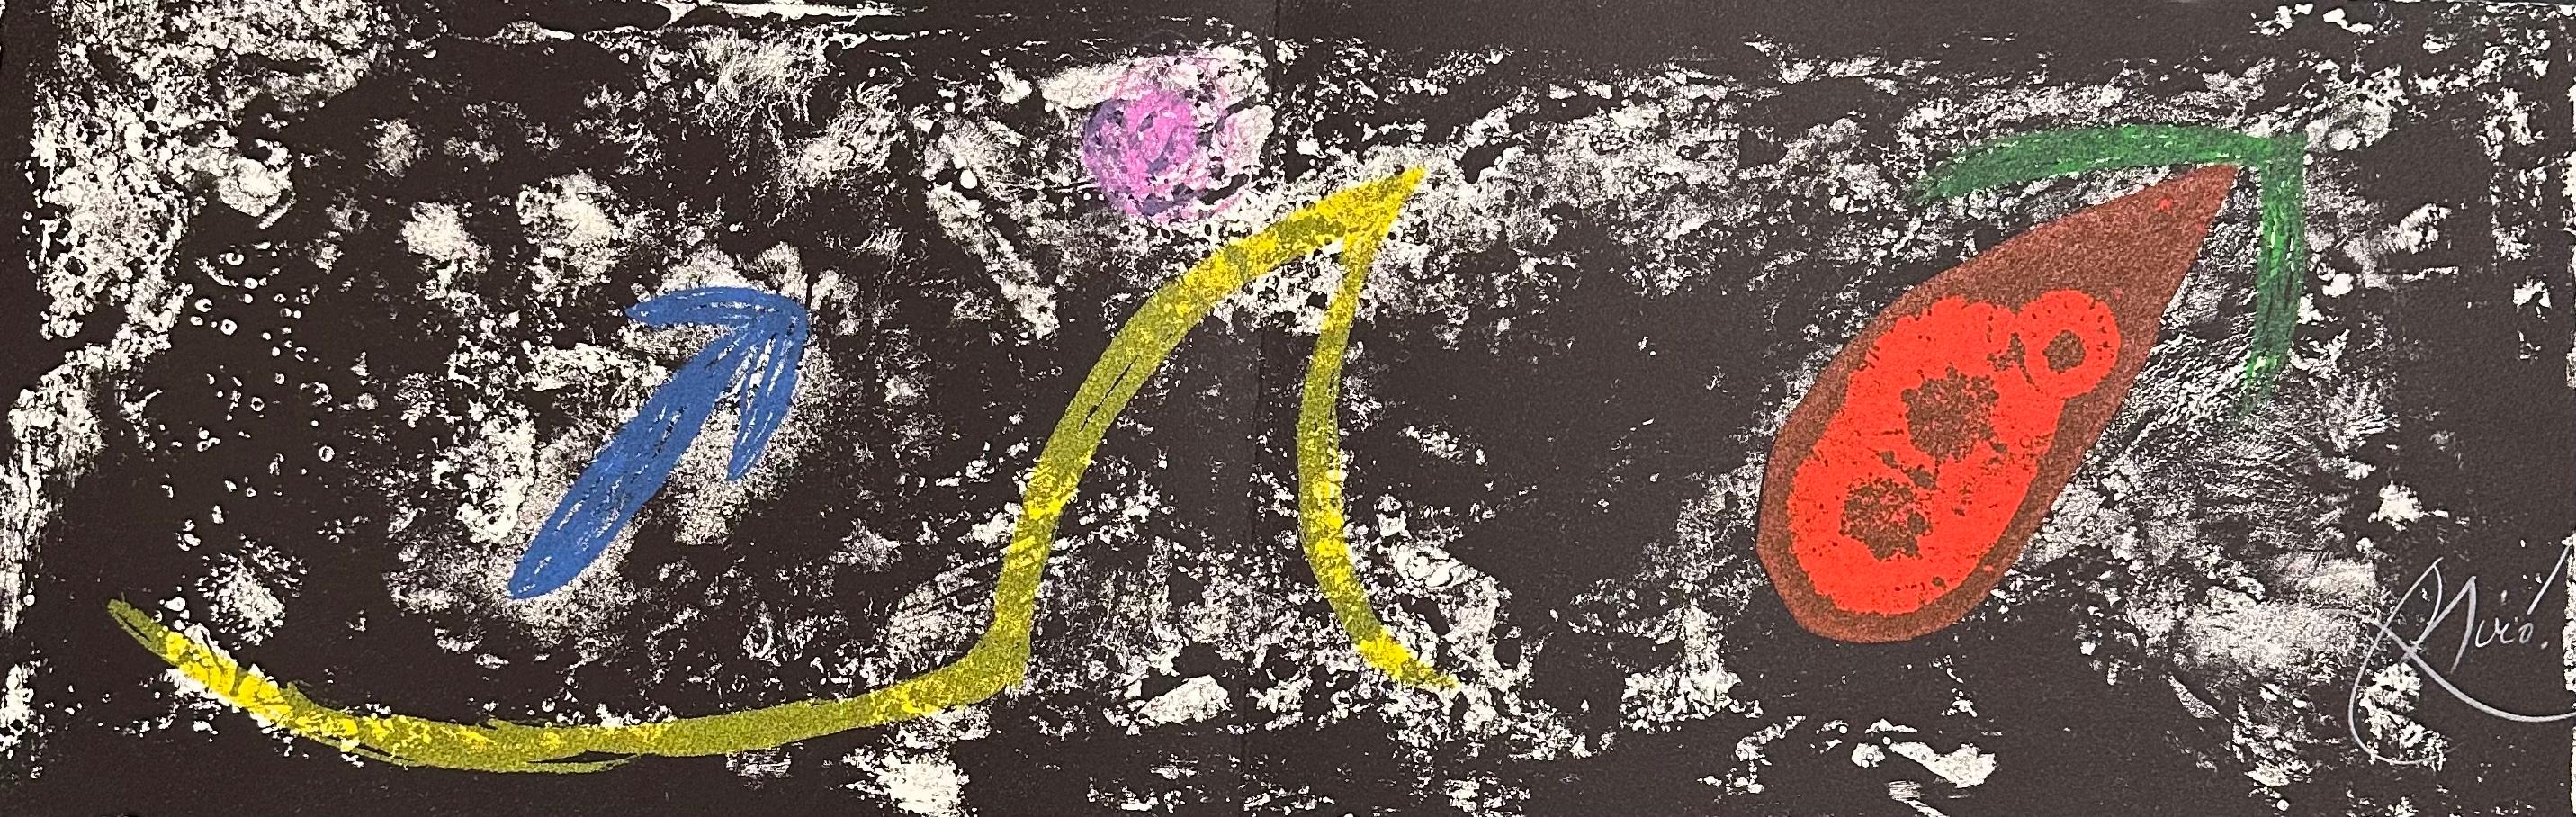 Joan Miró
M.985 aus "Les Pénaltiés de l'enfer ou les Nouvelles-Hébrides"
1974
Handsigniert 
Aus einer signierten Auflage von 50 Stück, nummeriert EA/50
Mourlot 985
10,5 x 29,5 Zoll (Horizontal)
*Unframed